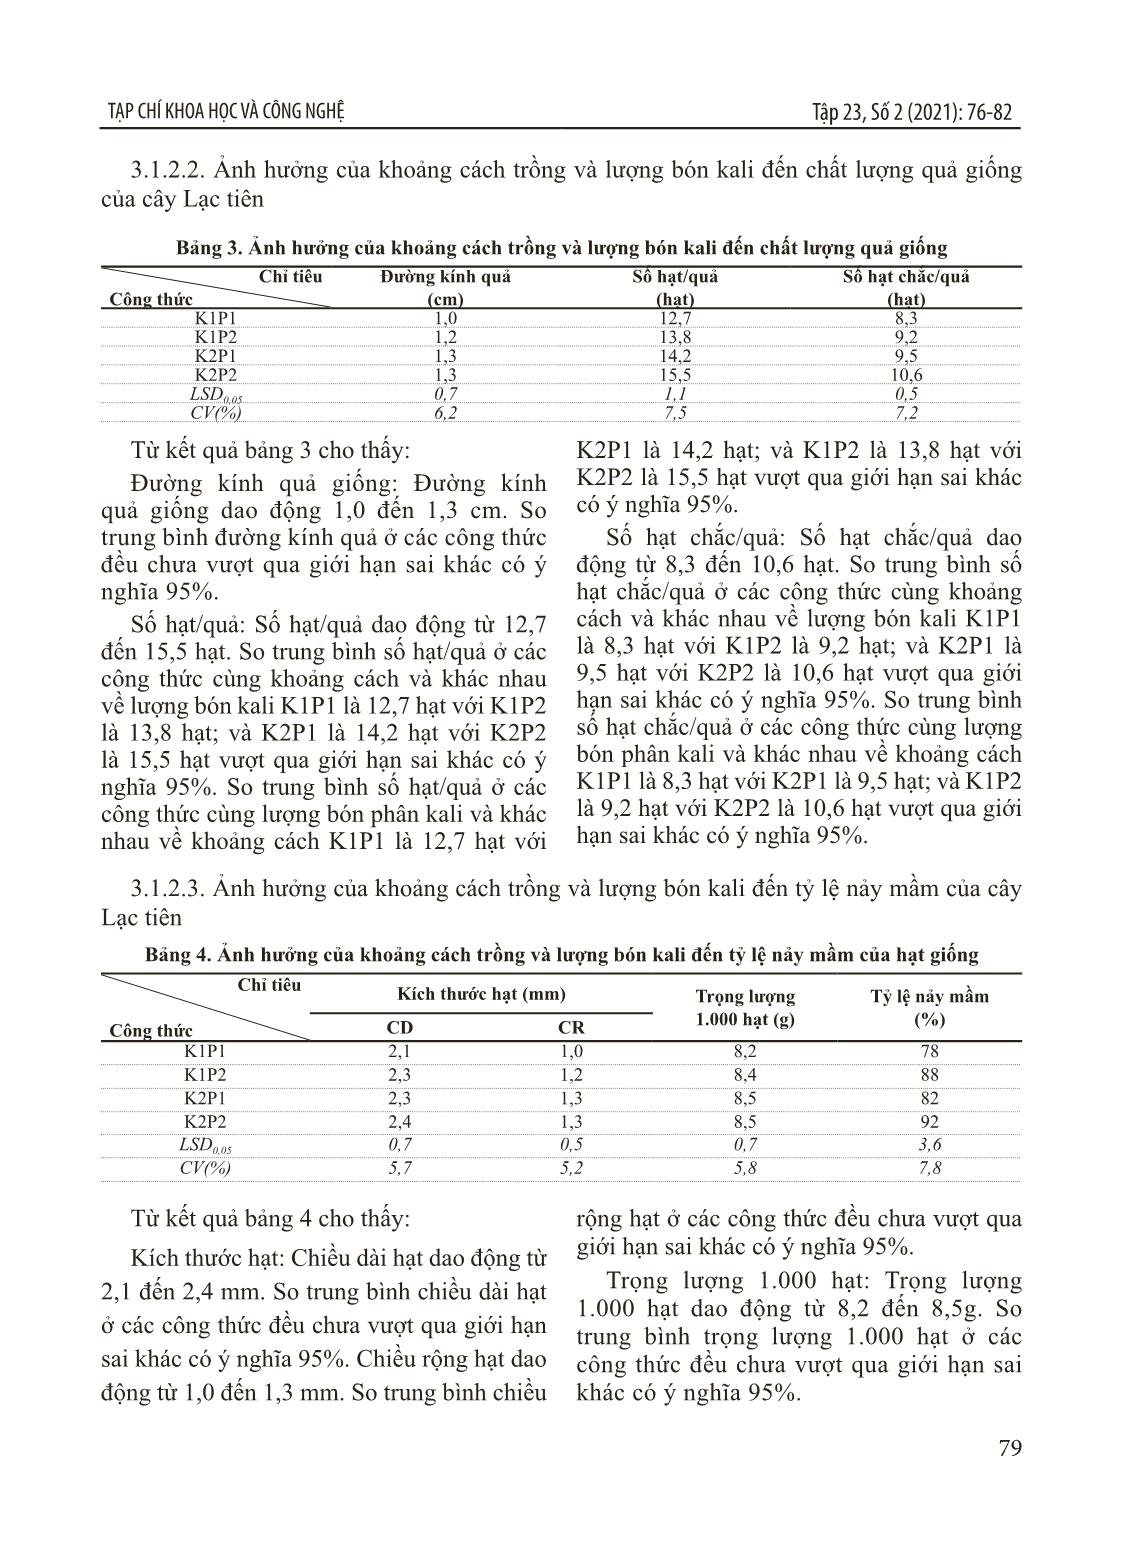 Nghiên cứu xây dựng quy trình sản xuất hạt giống lạc tiên (Passiflora foetida L.) tại Thanh Hóa trang 4